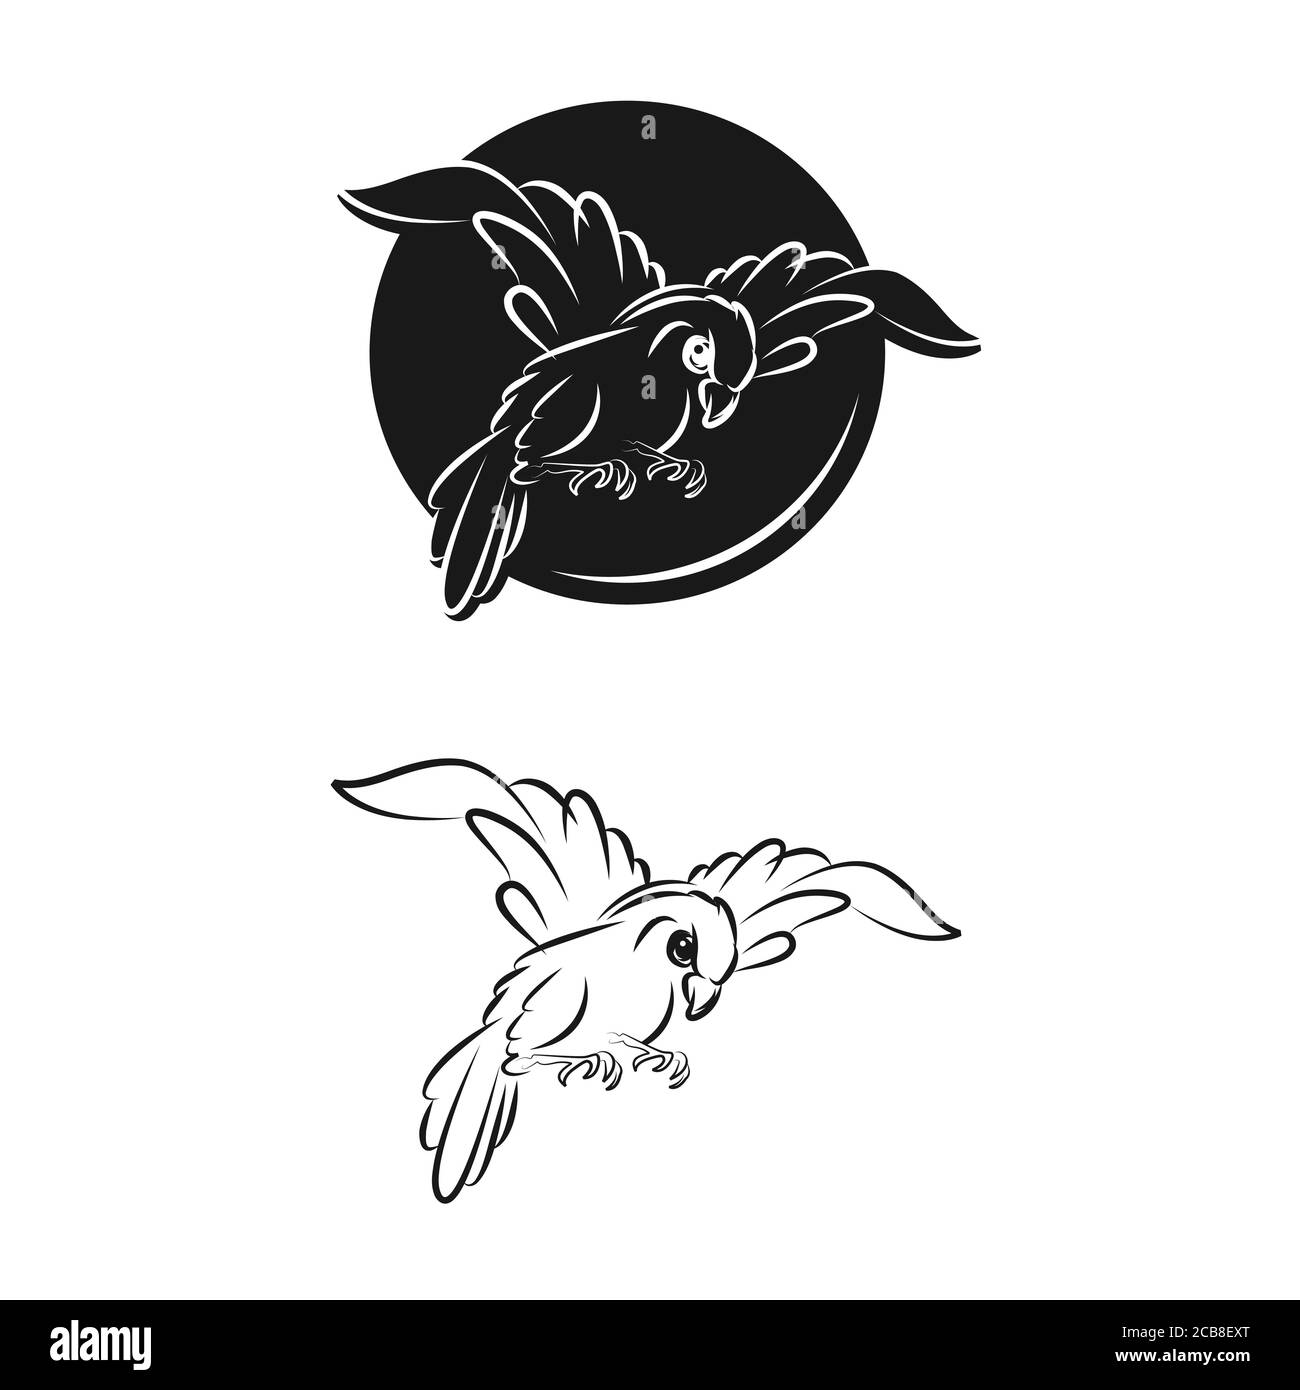 Logo oiseau vecteur graphique abstrait ligne et moderne avec feuille. Ensemble d'oiseaux volants isolés par vecteur avec ailes de flottement étalées. Illustration de Vecteur